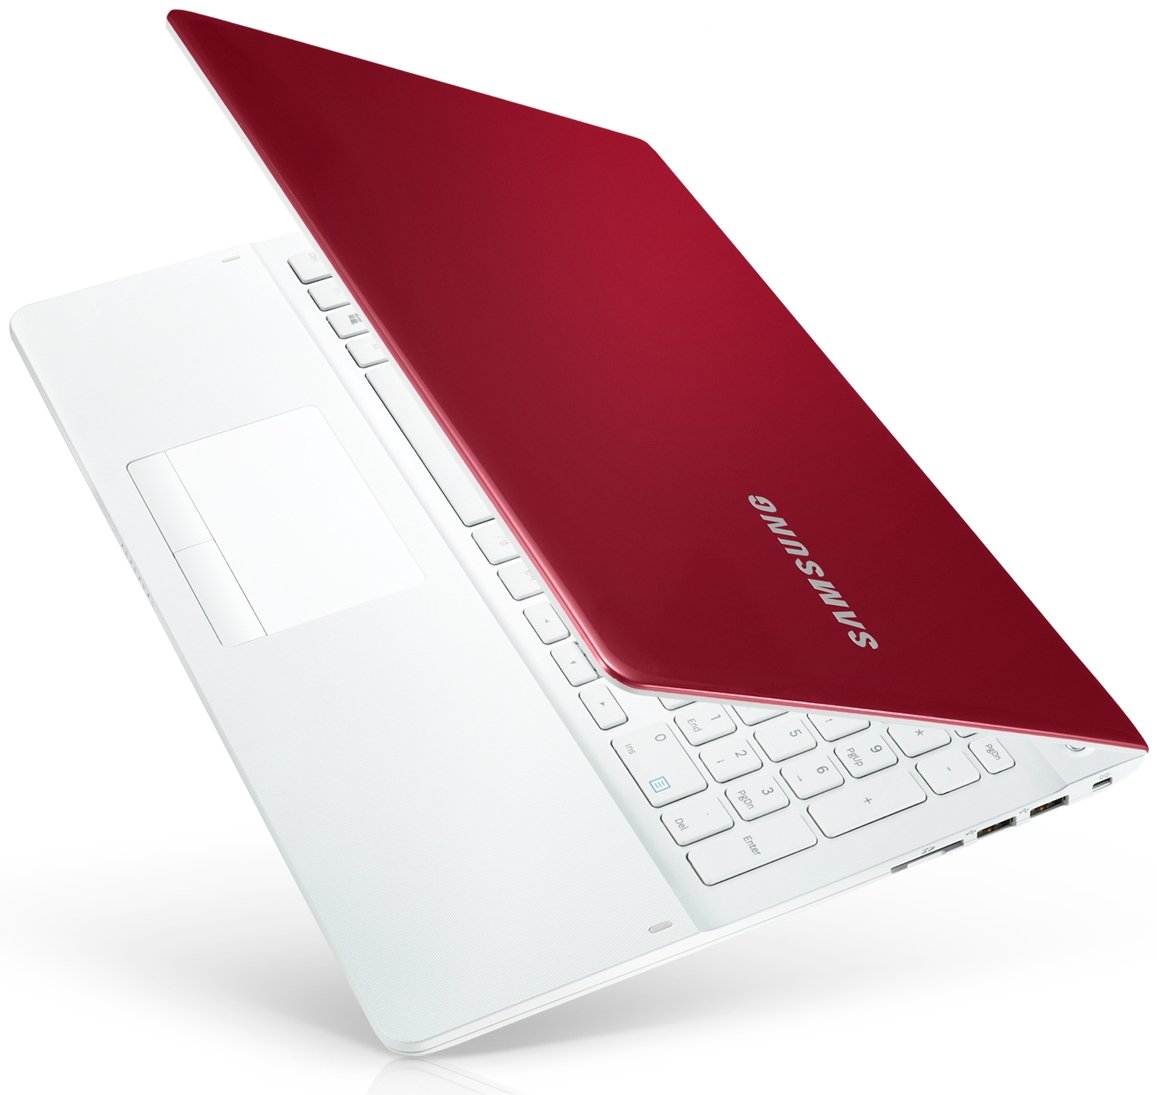 Np ноутбук купить. Samsung np370r5e. Ноутбук Samsung np370r5e. Белый ноутбук Samsung 370r5e. Самсунг r5.